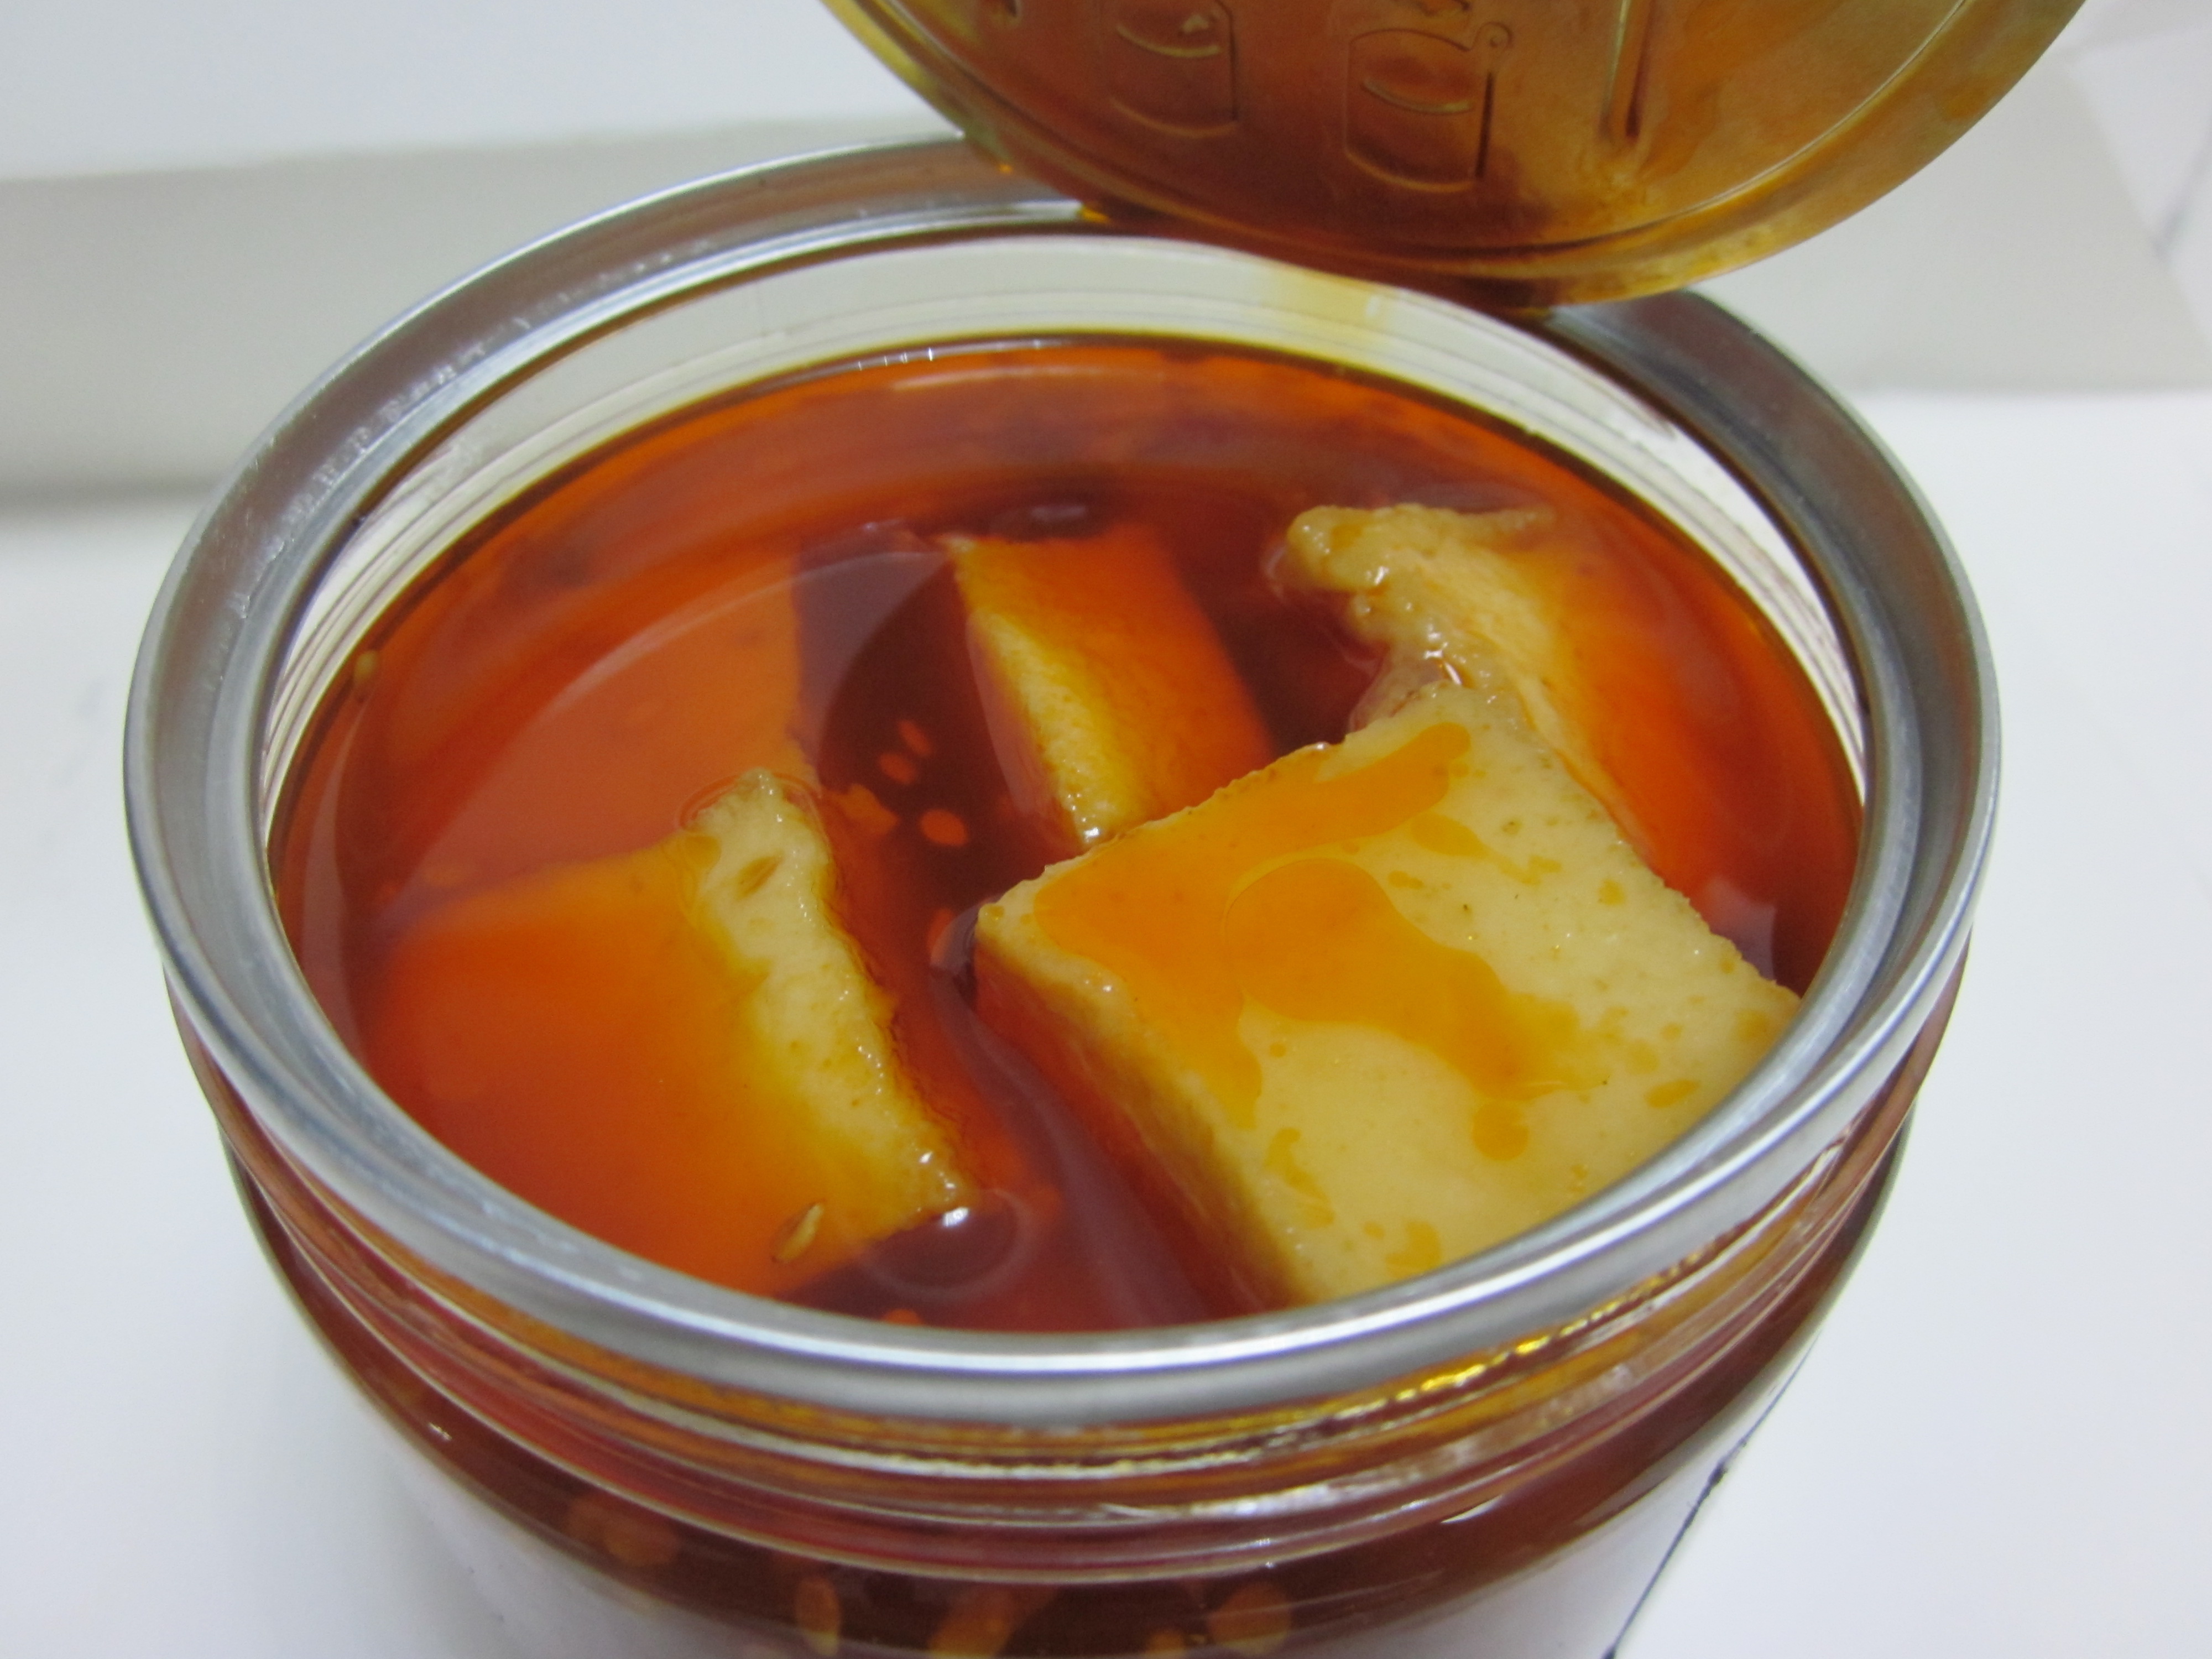 发现丨徐州有家品质不错的捞汁小海鲜捞汁味